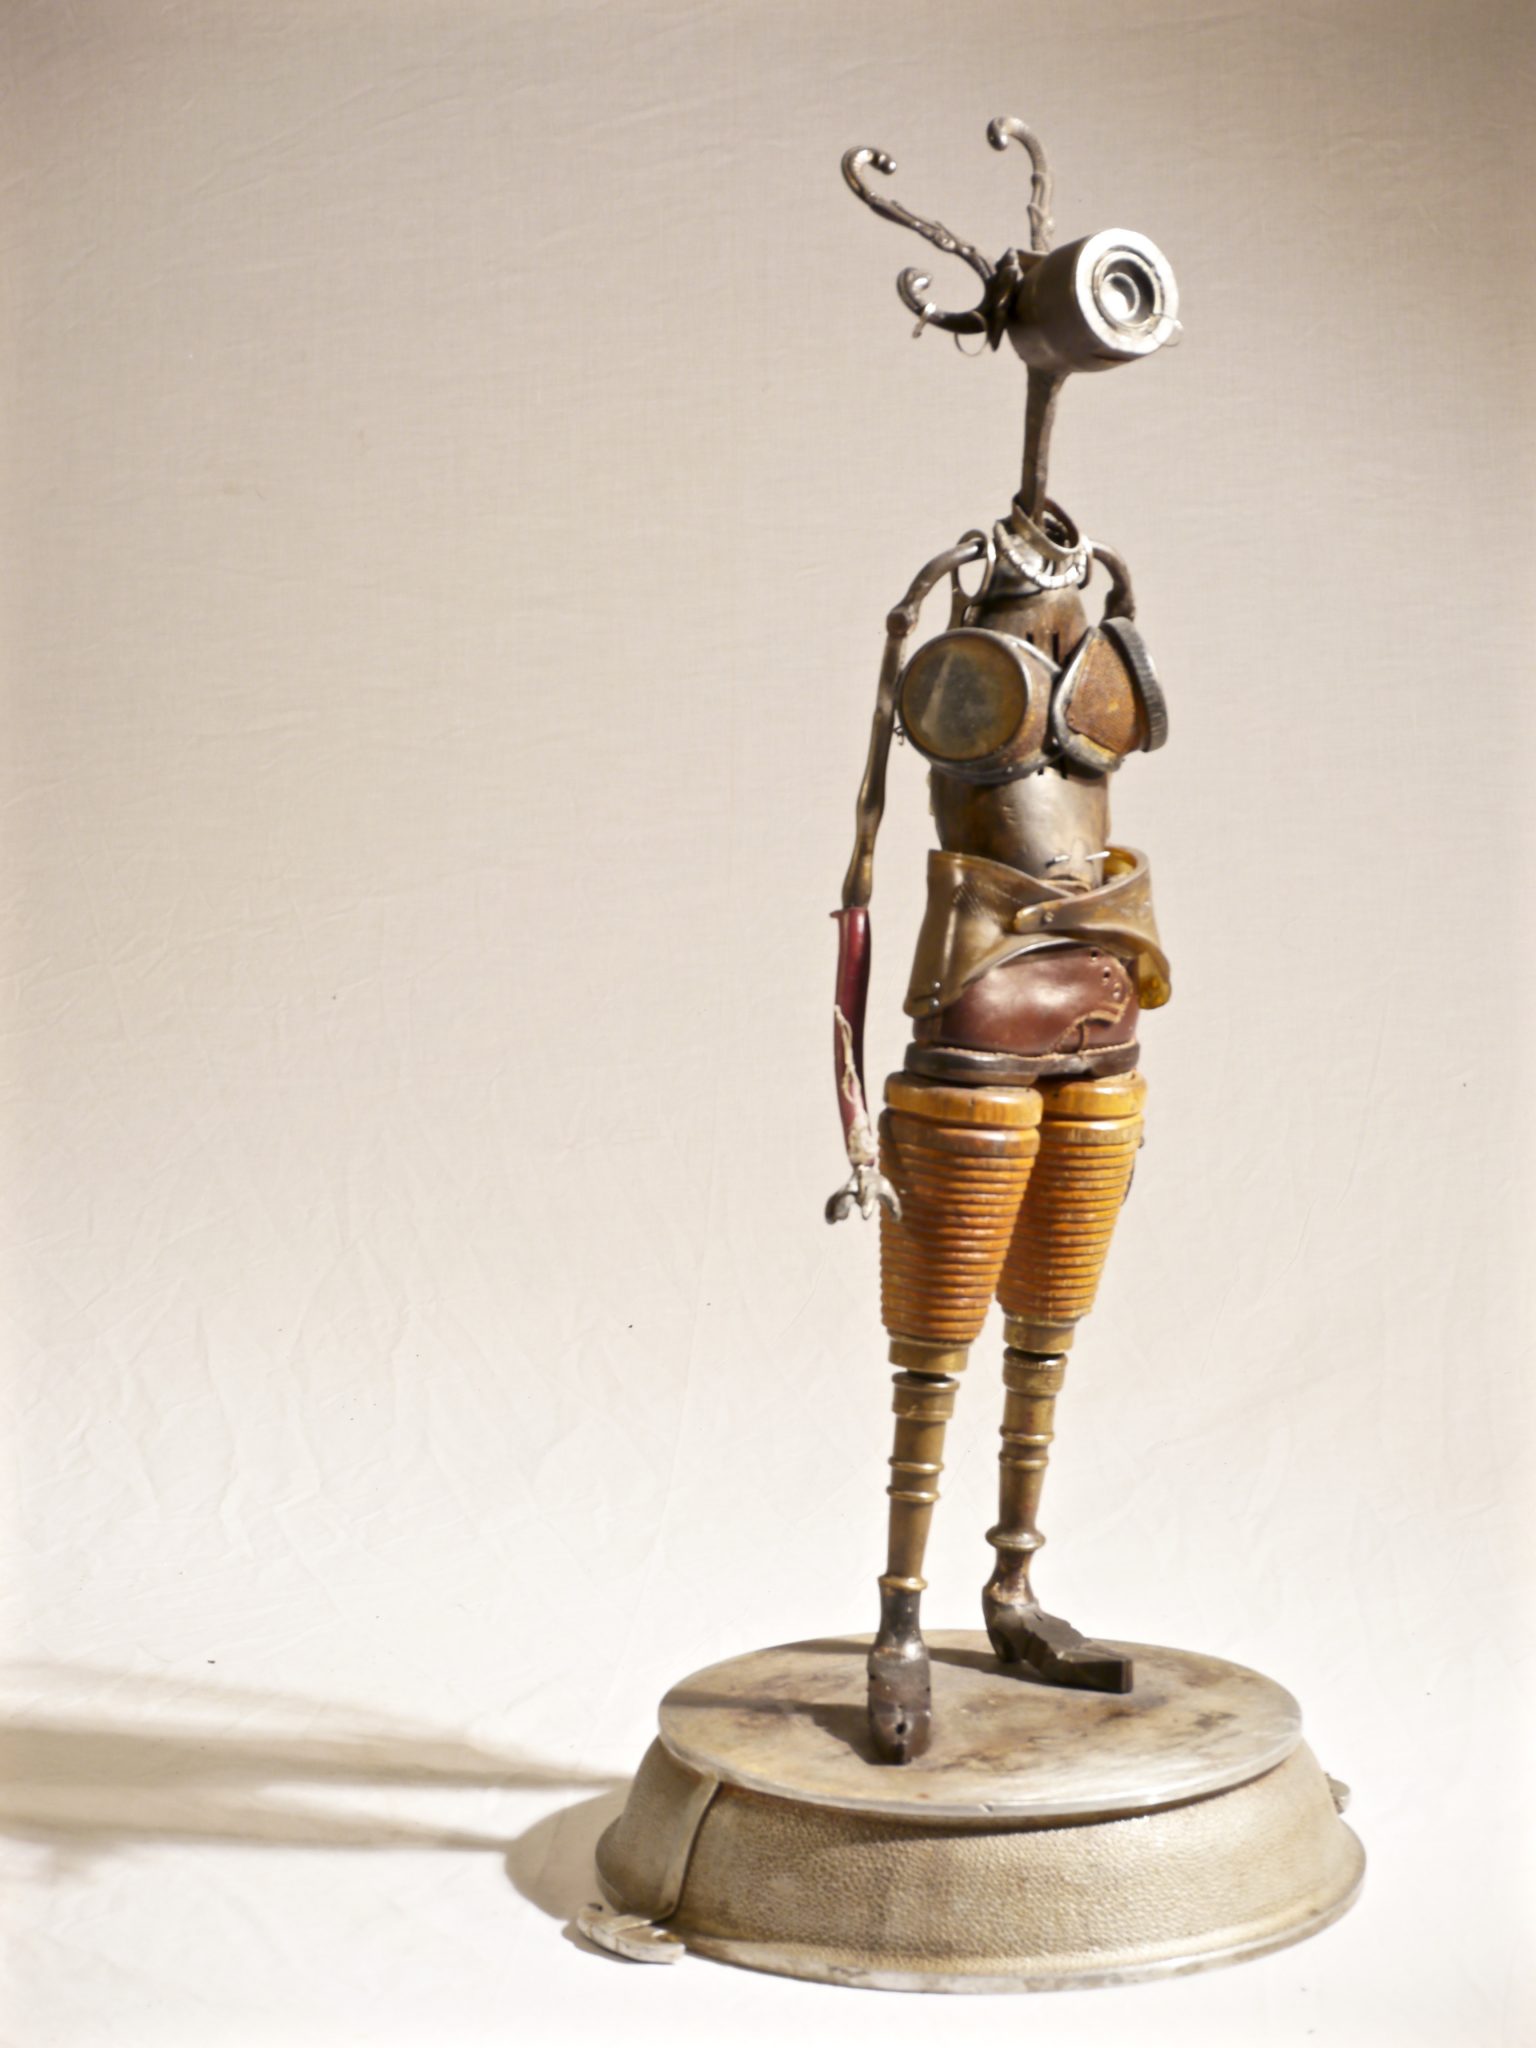 Remi Bergeron-Galerie Roccia Magog-Artiste-Sculpture-Materiaux trouvés